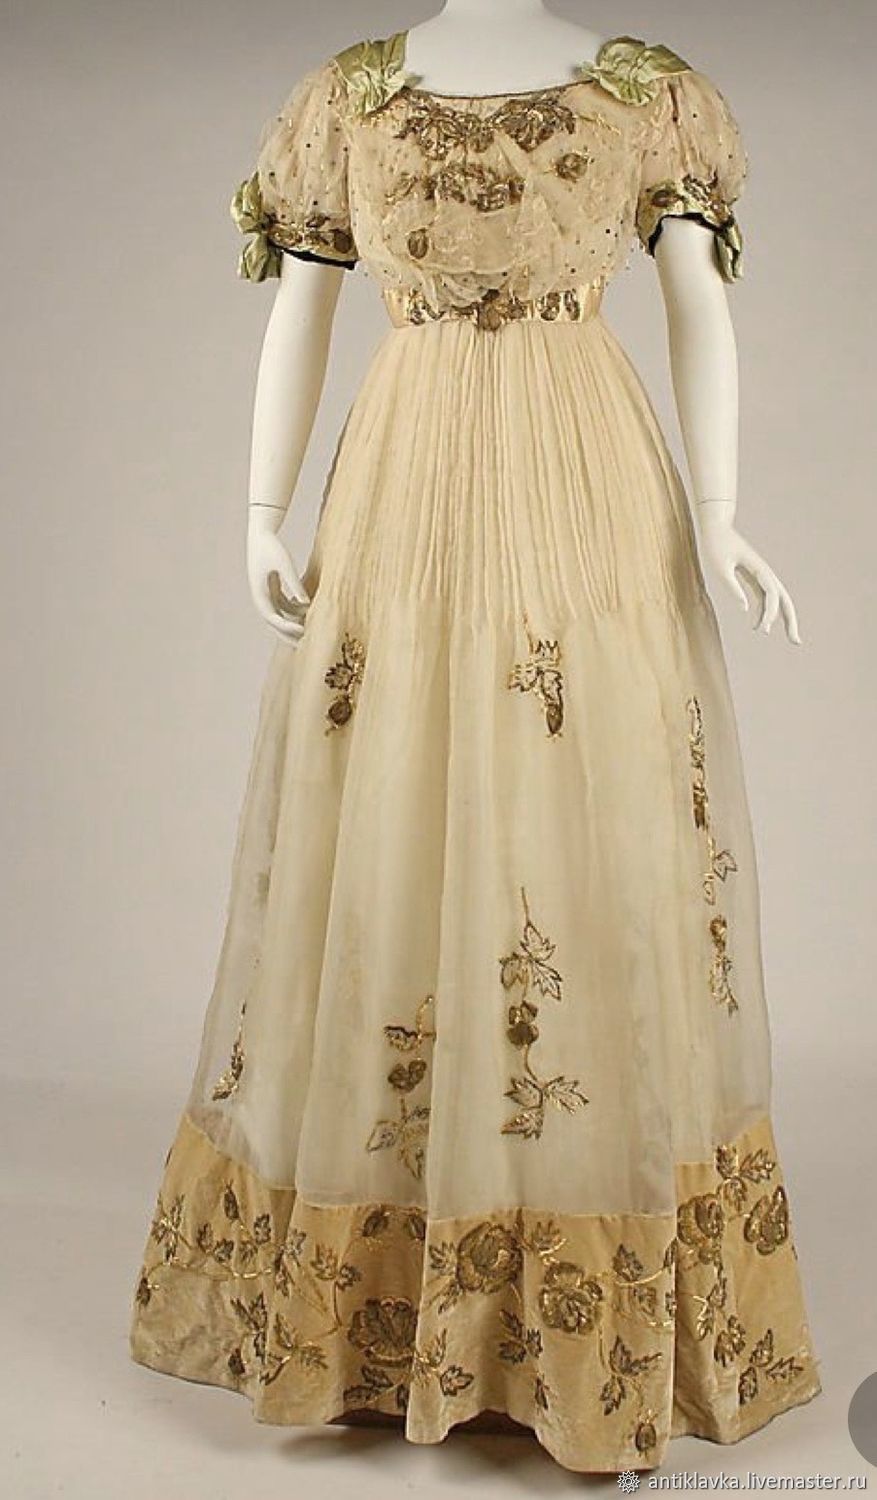 Платье в стиле конца 19 века